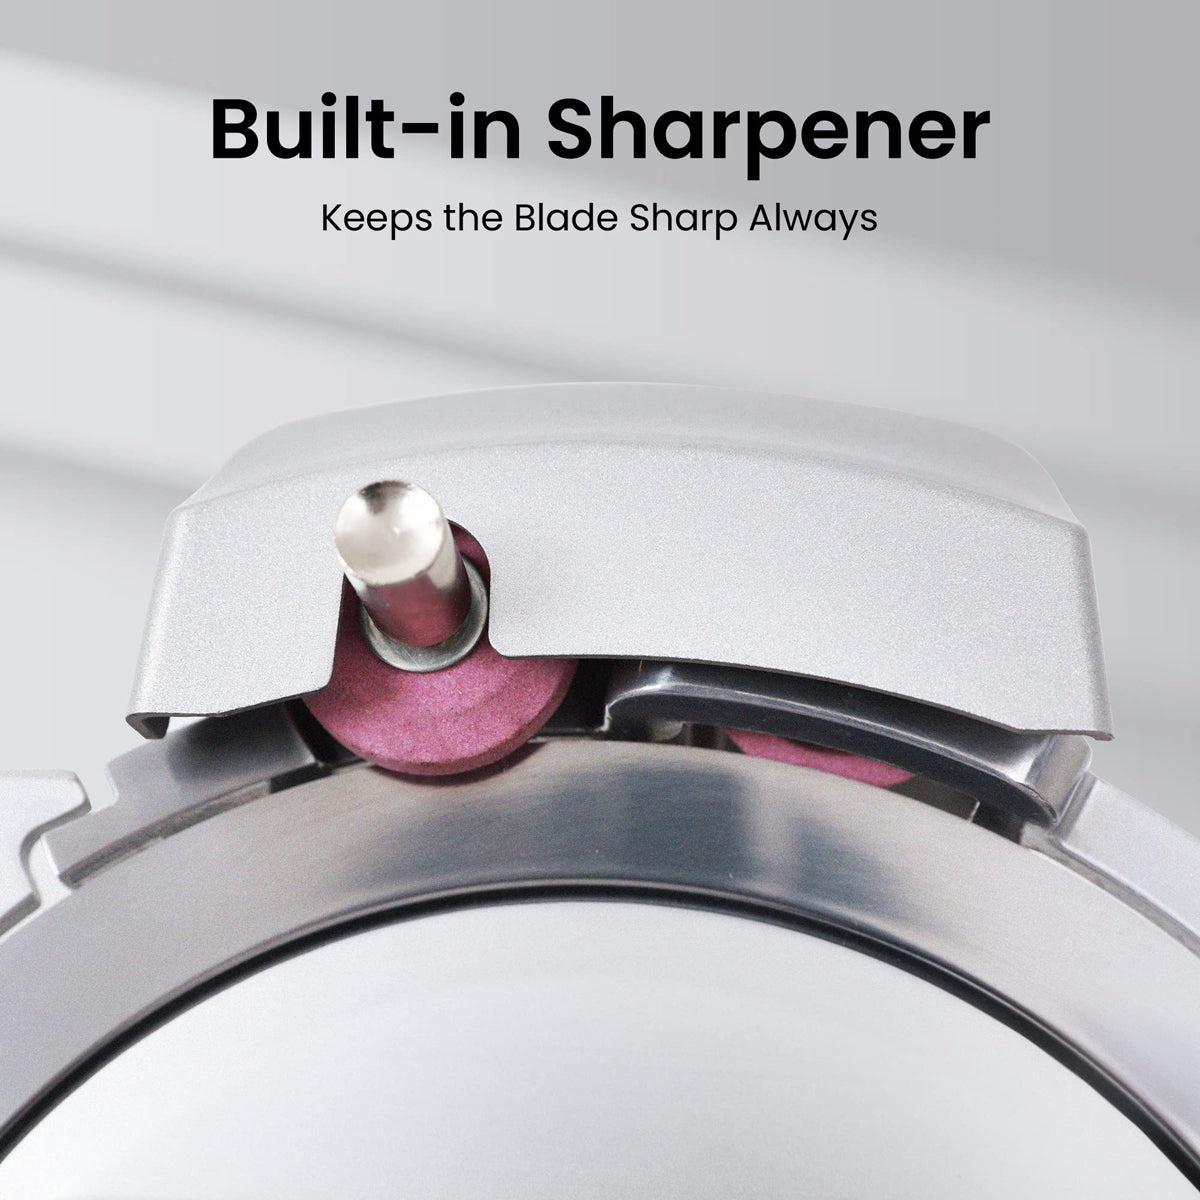 Built-in Sharpener